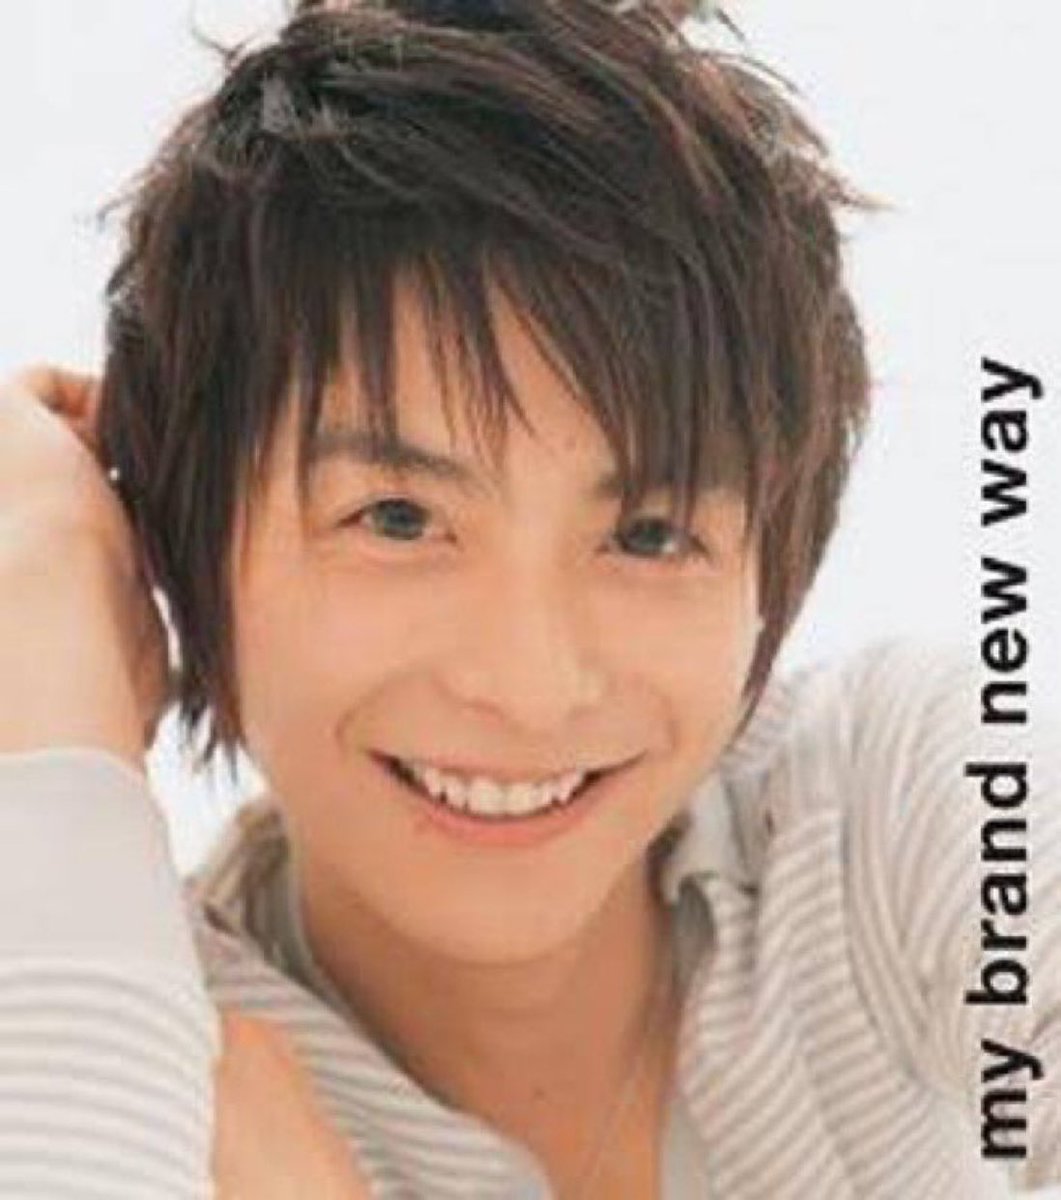 【2007年4月25日(水)】
#小池徹平 の楽曲
my brand new way 発売

#mybrandnewway